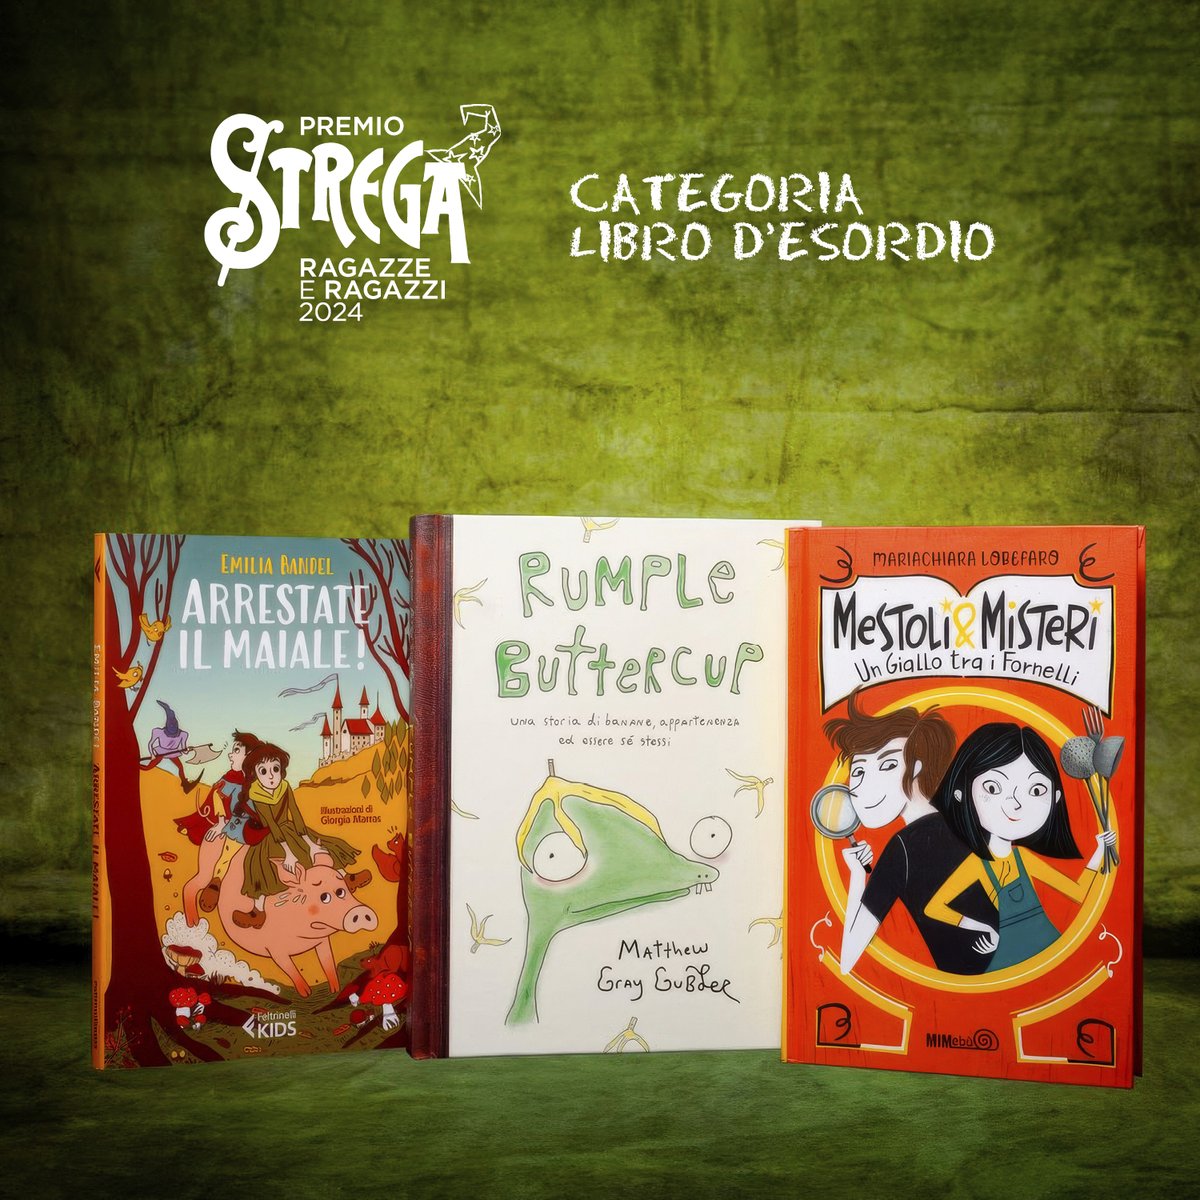 Venerdì 10 maggio, ore 13 @SalonedelLibro Arena Bookstock #PremioStregaRagazzeeRagazzi2024 Annuncio del libro vincitore per la categoria Libro d’esordio e delle terne finaliste per le categorie 6+, 8+ e 11+. Conducono Alessandro Barbaglia e Marcella Terrusi.